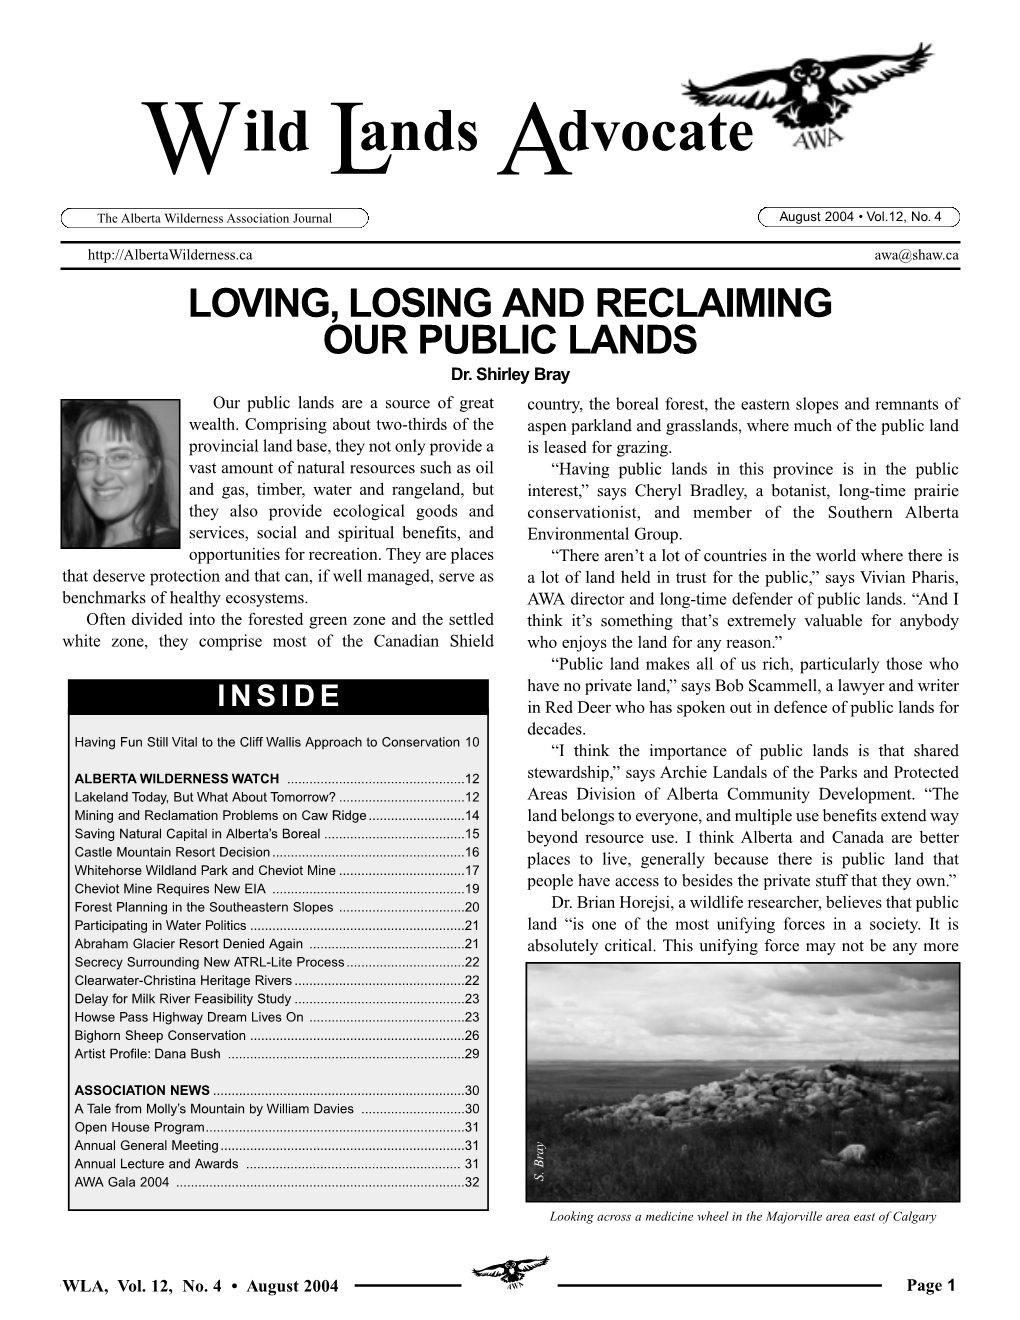 Wild Lands Advocate Vol. 12, No. 4, August 2004